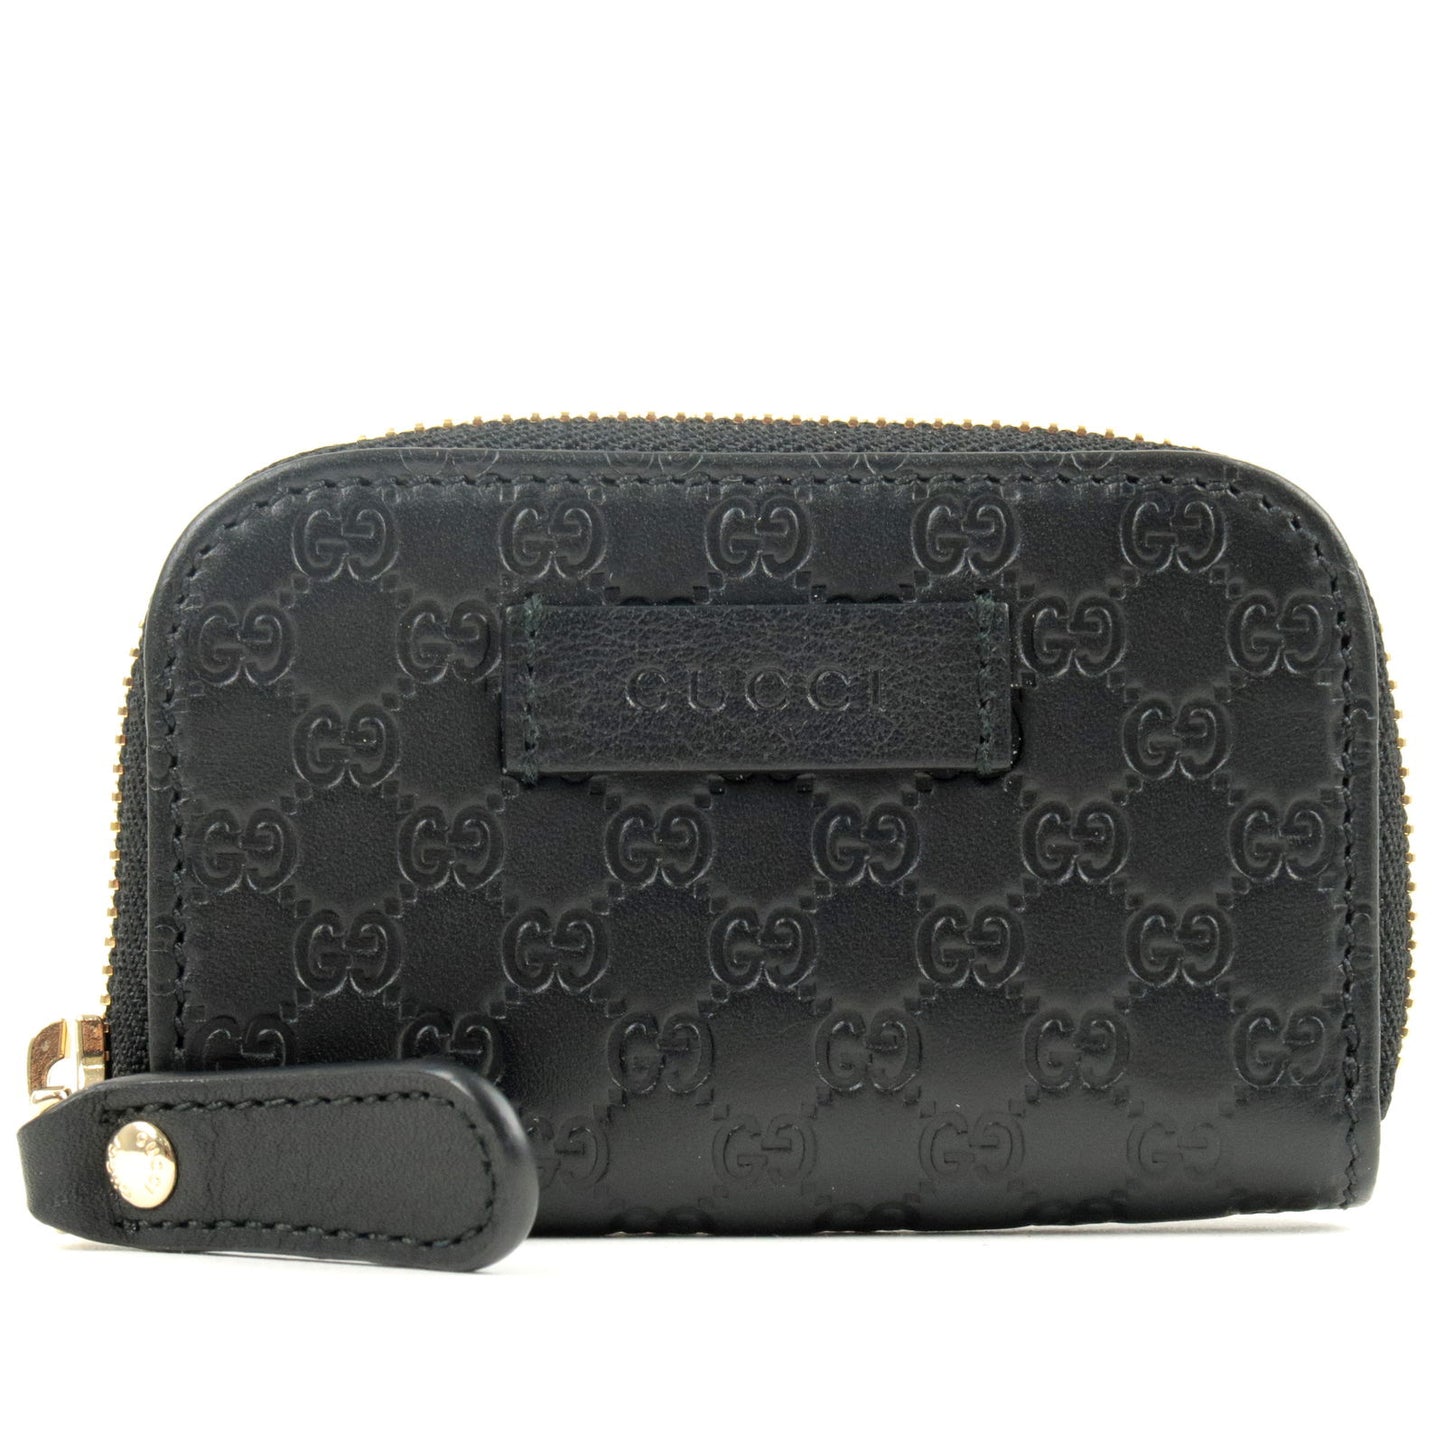 GUCCI-Micro-Guccissima-Leather-Mini-Coin-Case-Black-449896